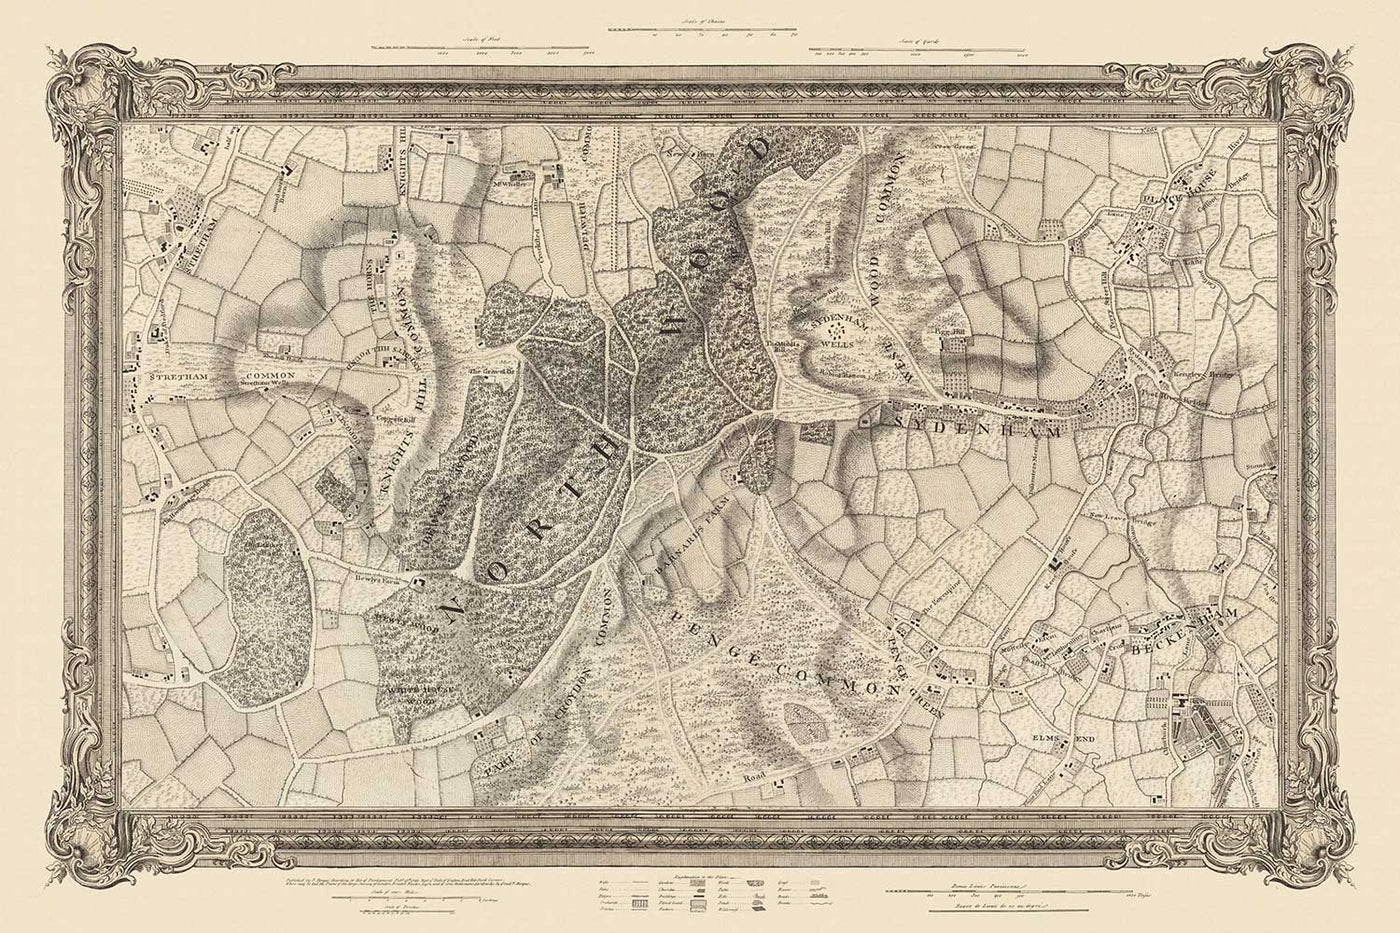 Ancienne carte du Sud-Est de Londres en 1746 par John Rocque - Streatham, Beckenham, Sydenham, Knights Hill, Norwood, SE19, SE21, SE23, SE26, SE27, SW2, SW16